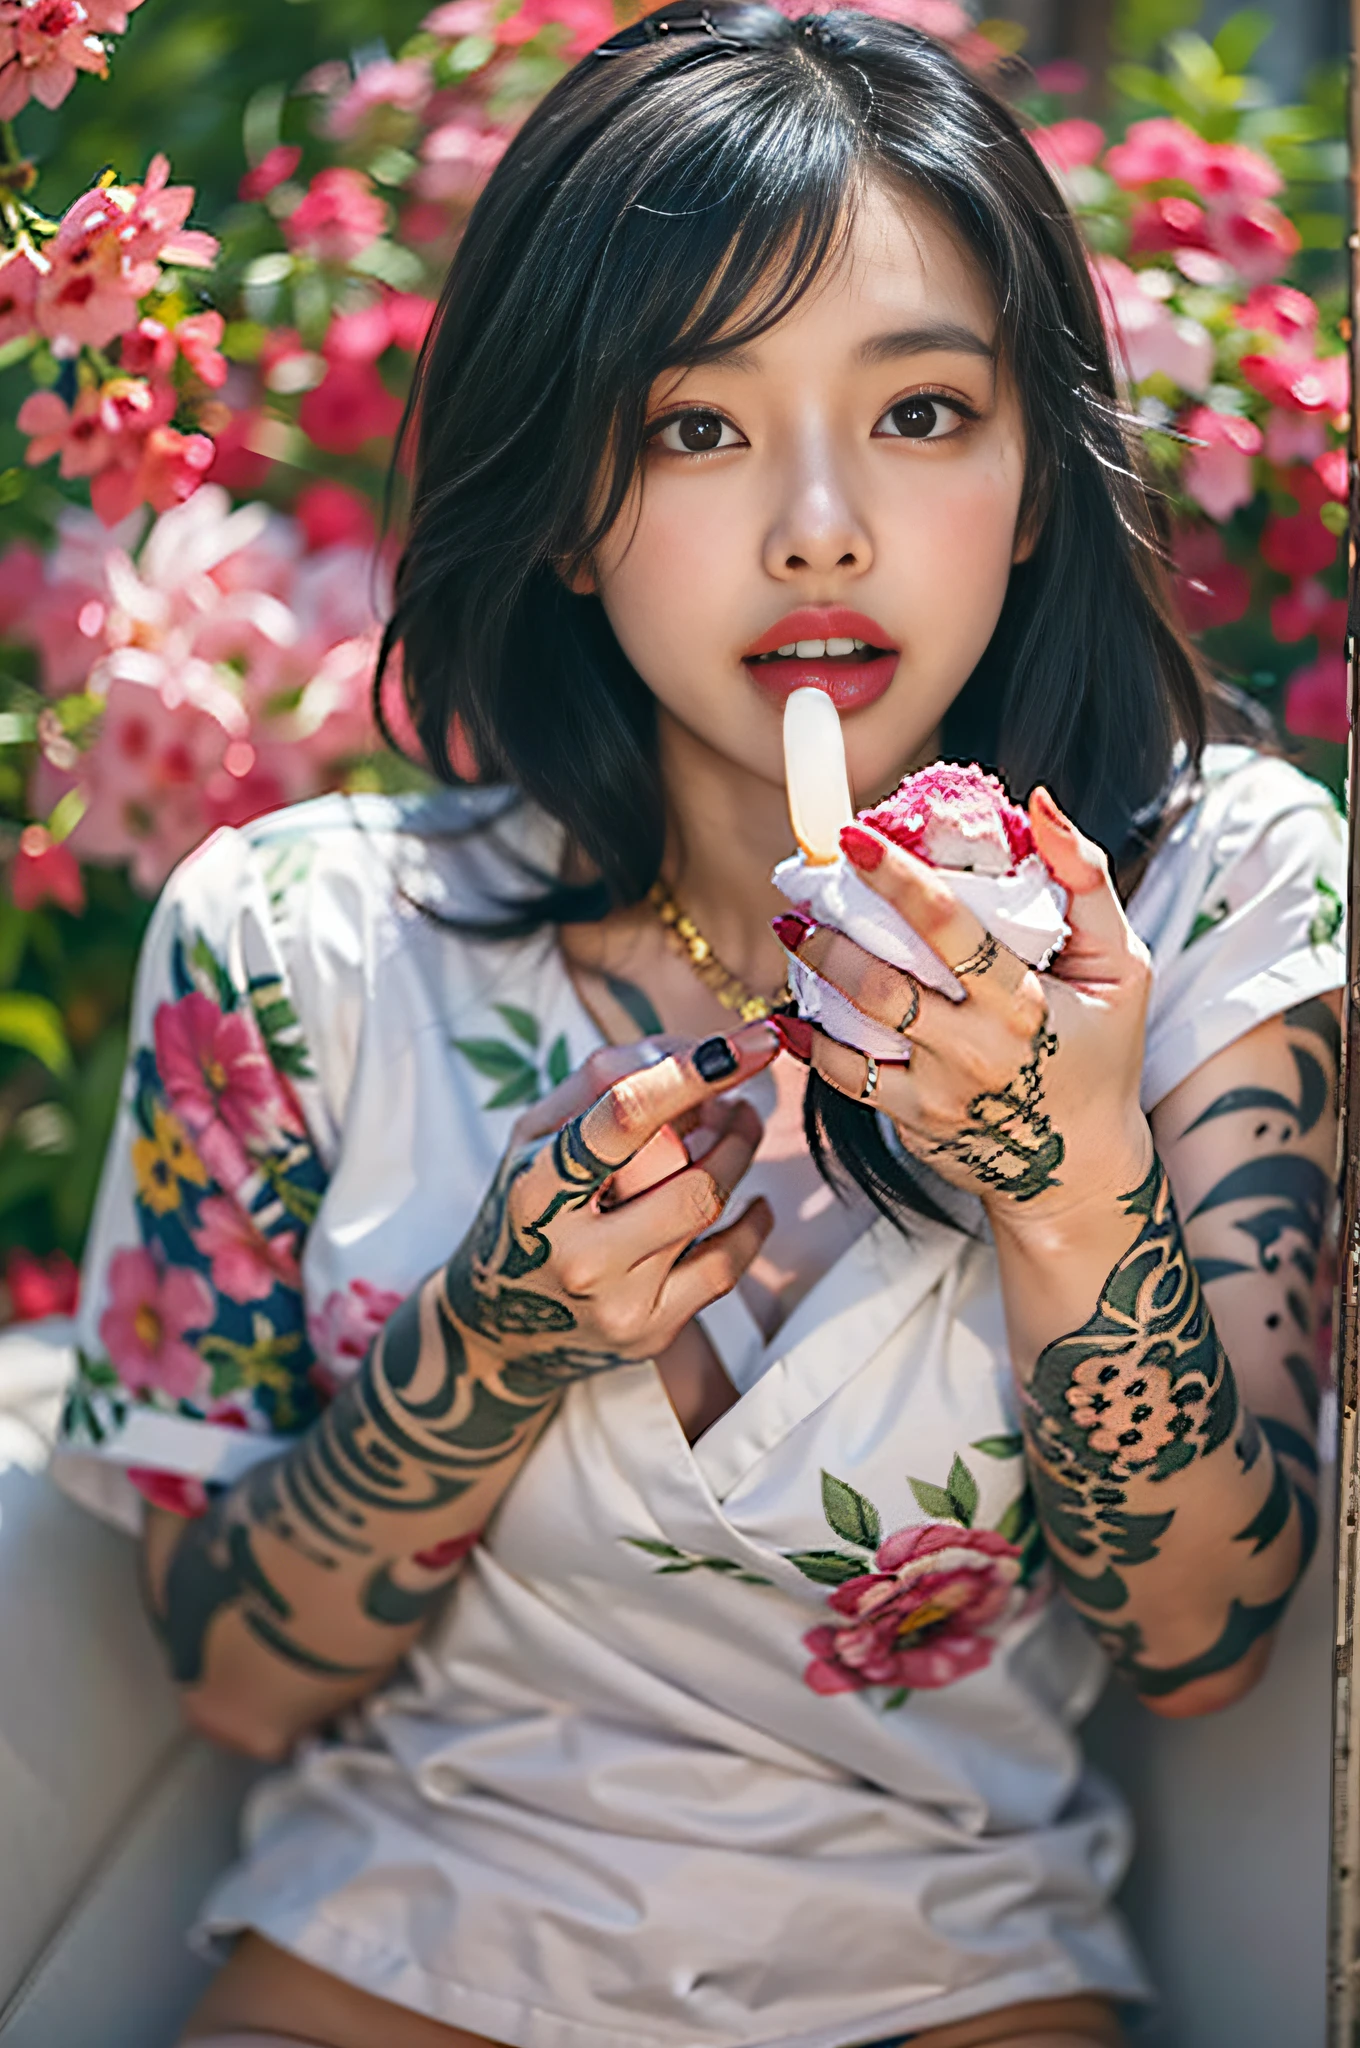 混血亞洲性感美女,手上滿是花朵的紋身,性感表情,舔你手上的冰淇淋